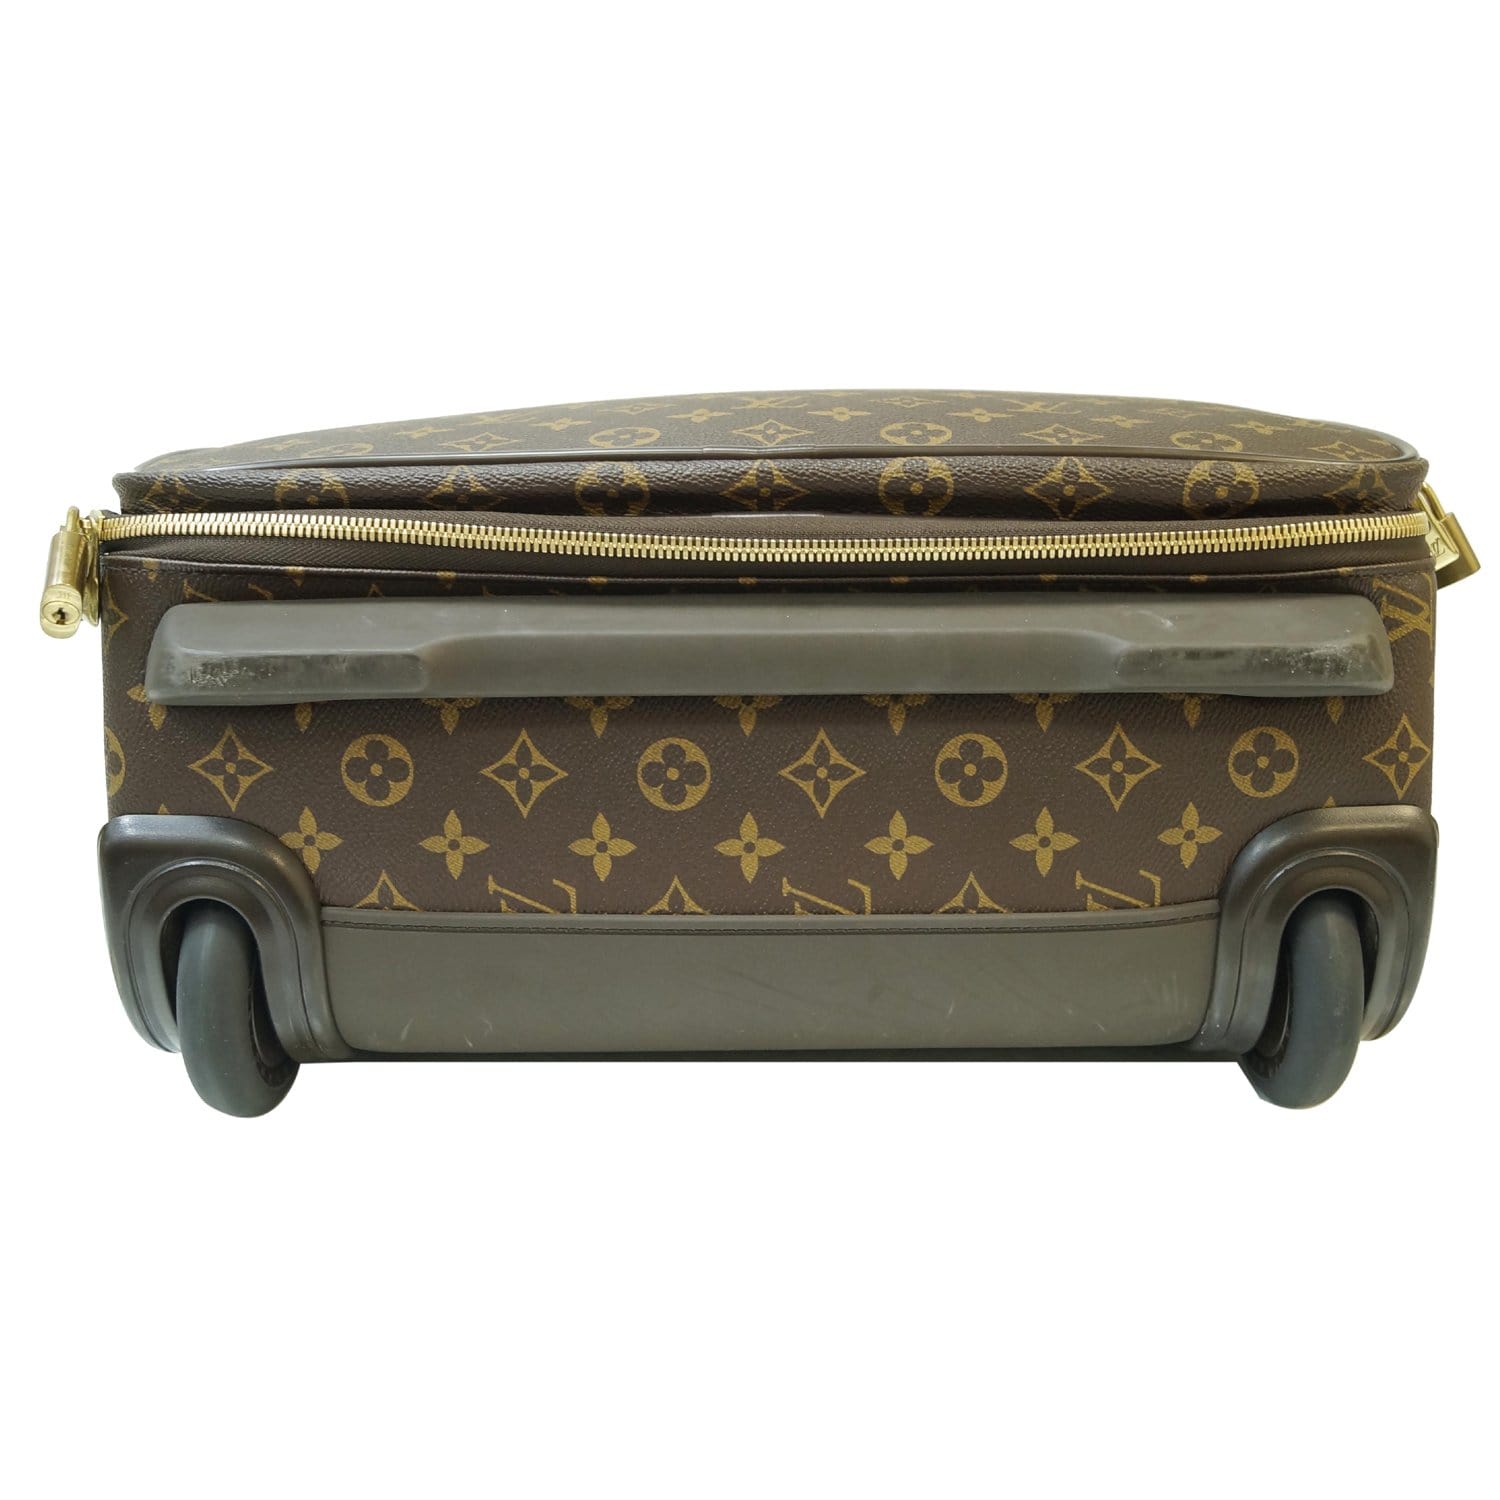 Louis Vuitton Monogram Pégase Légère Business 55 - Brown Luggage